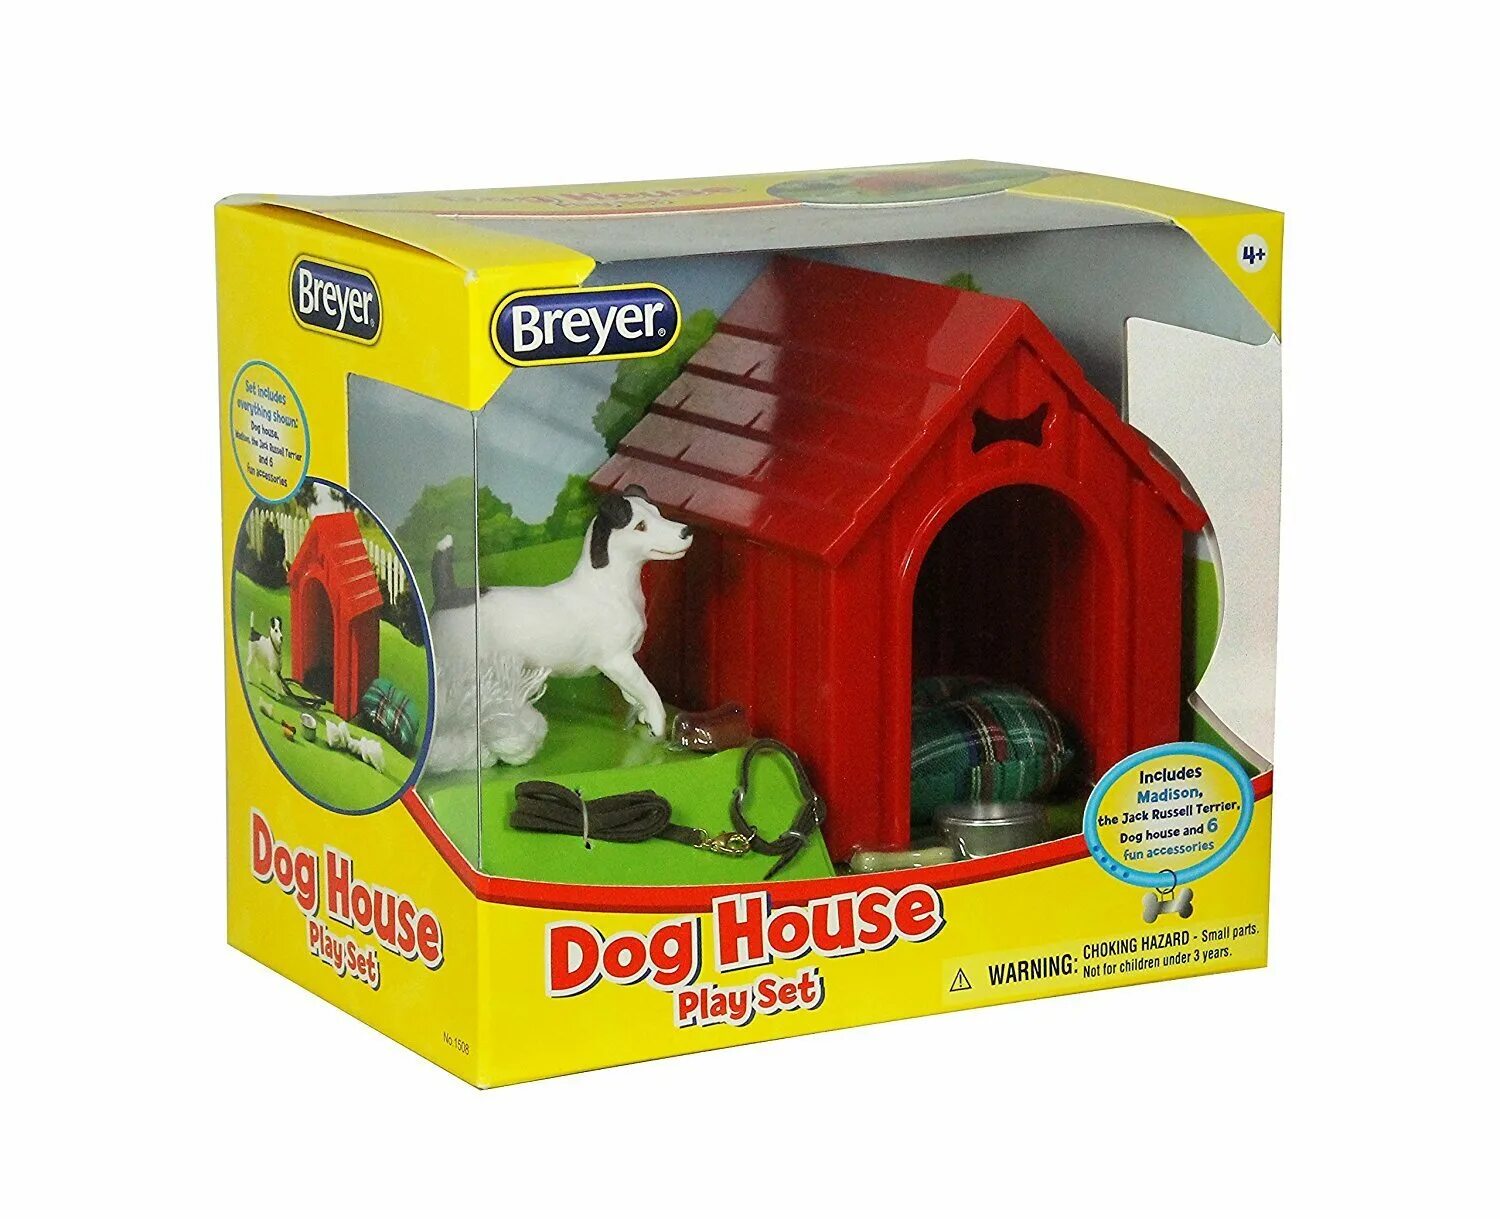 Игрушки Dog House. Игровой набор Breyer собачий домик. Игровой набор doggy House. Doggy House игровой набор самолёт. Игра dog house dogs house net